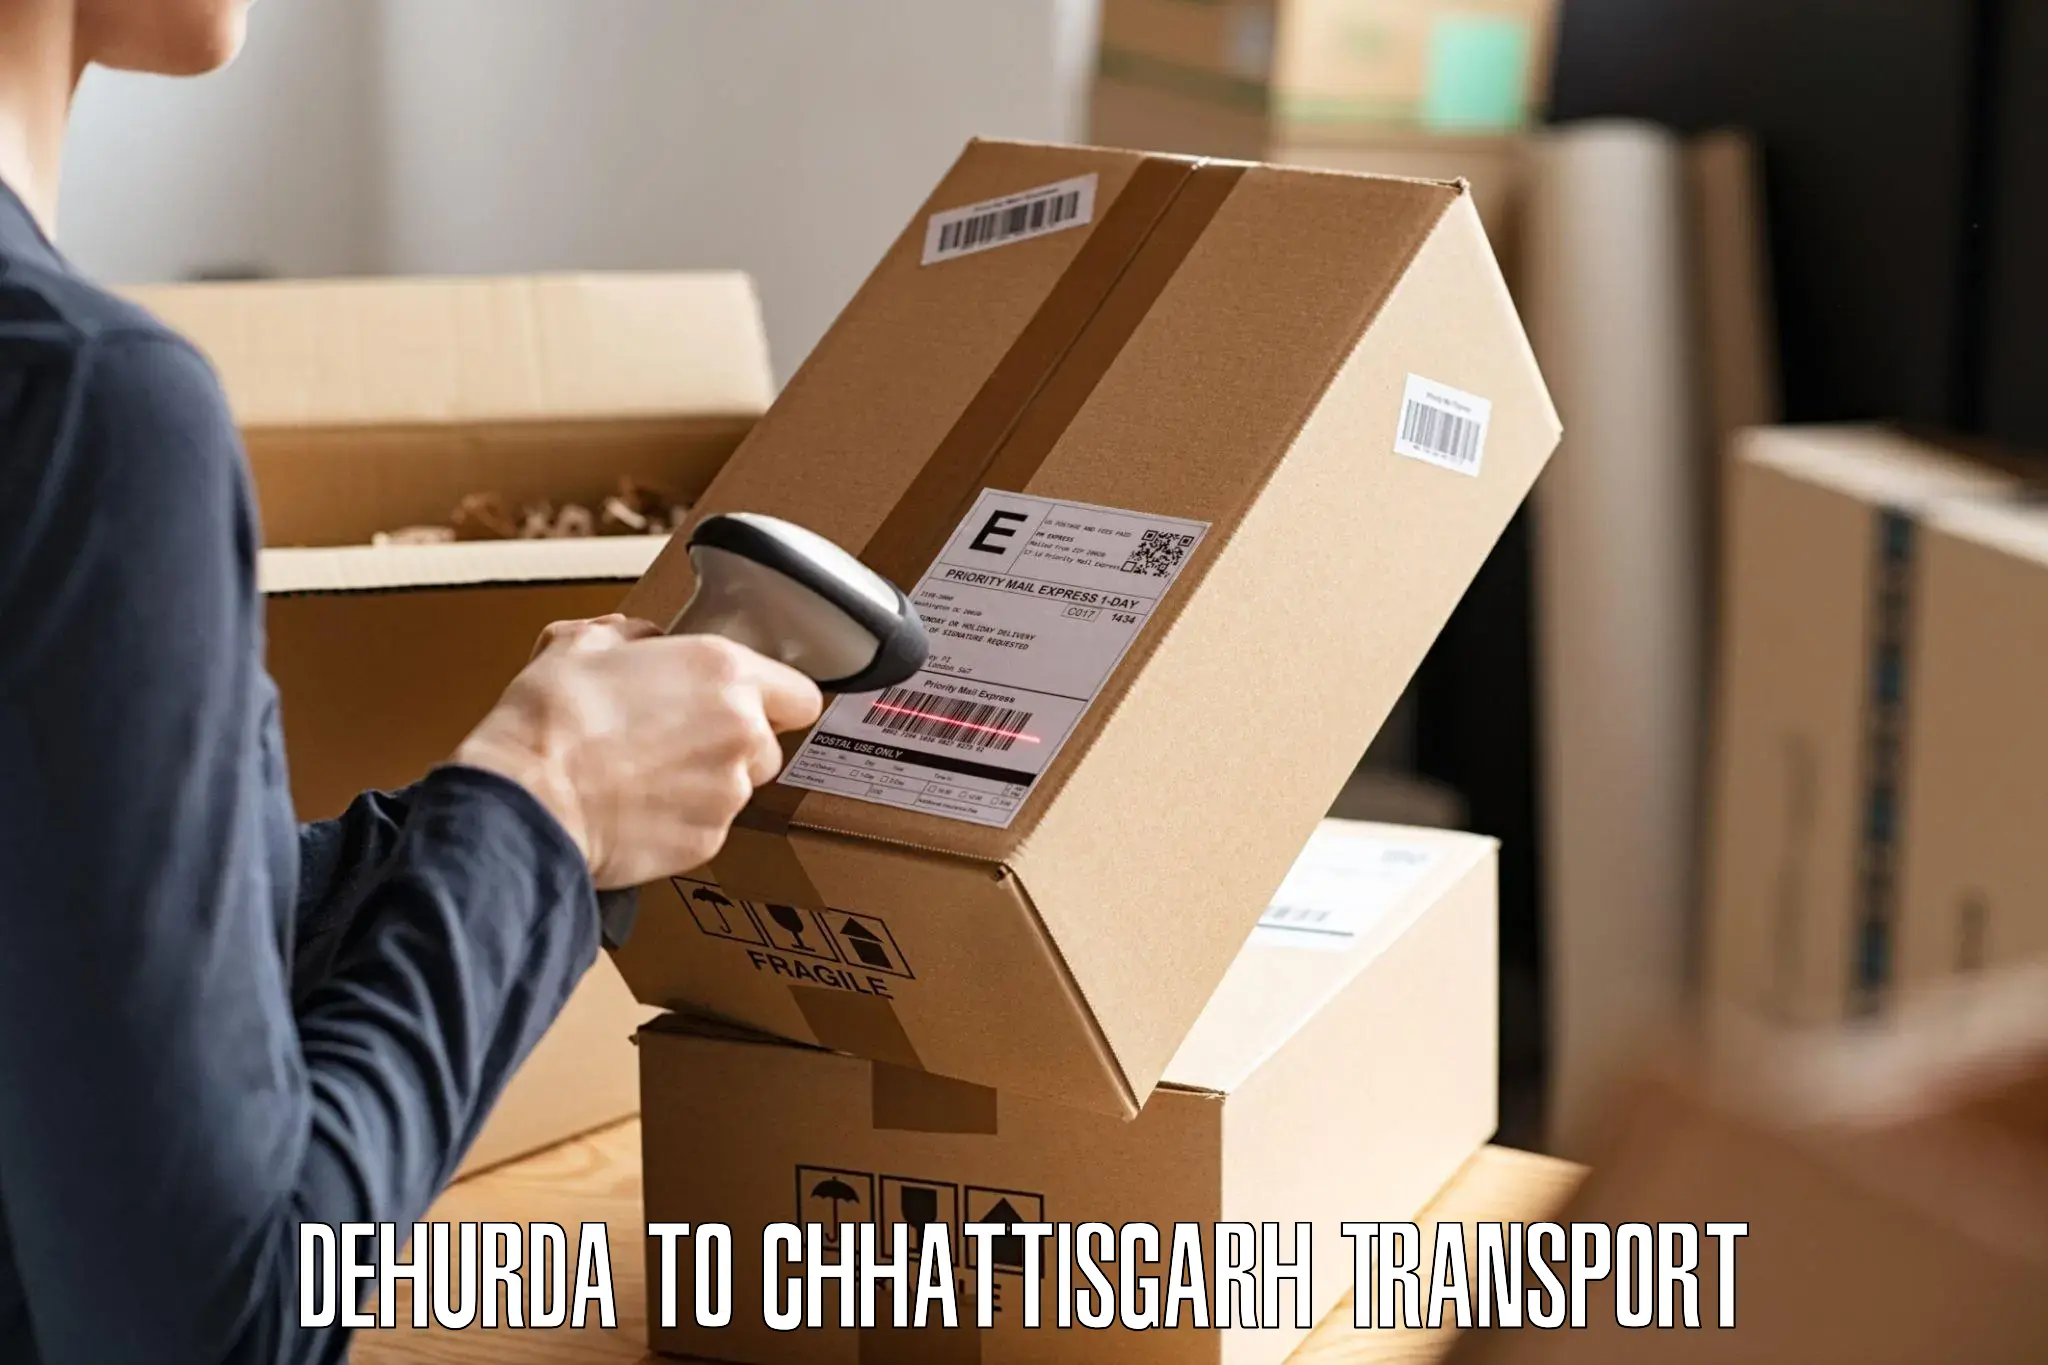 International cargo transportation services Dehurda to Korea Chhattisgarh